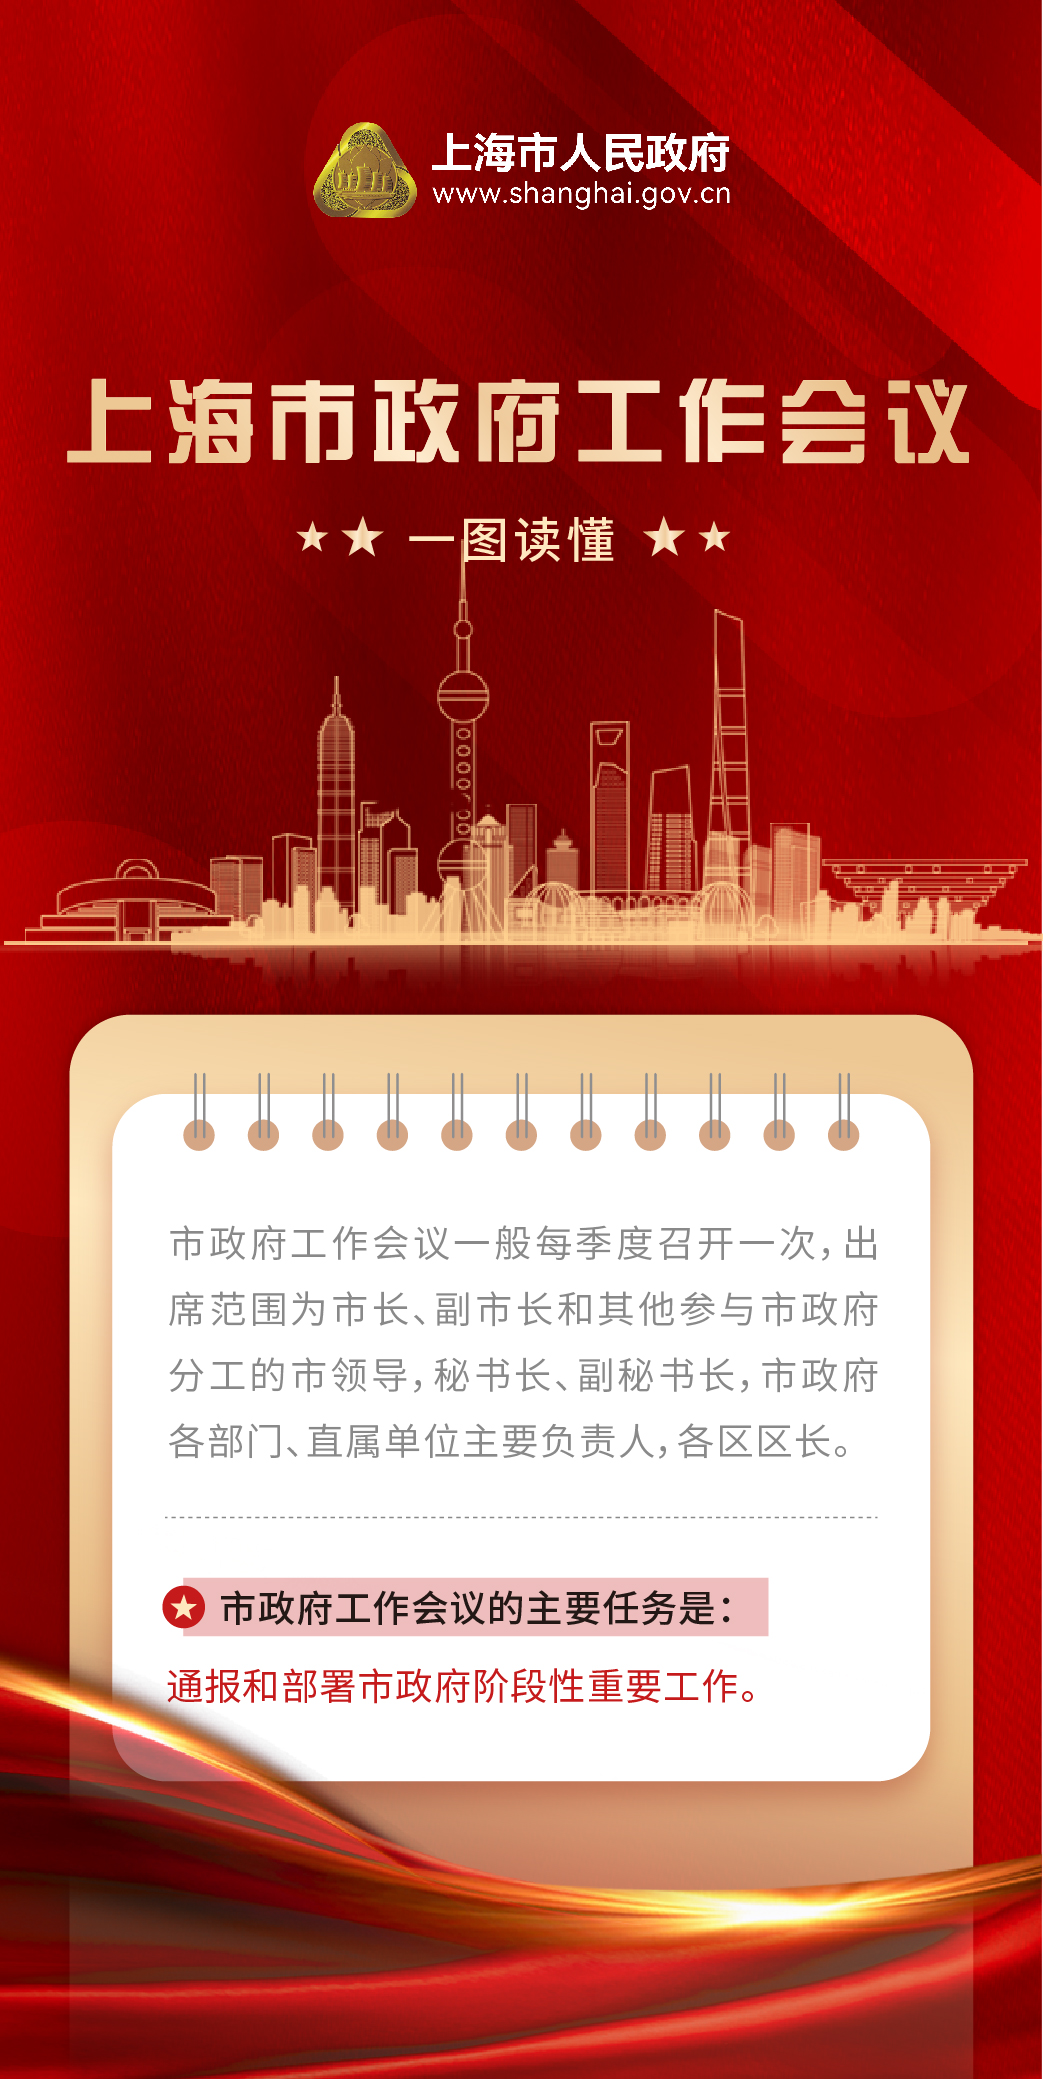 上海市政府工作会议.jpg